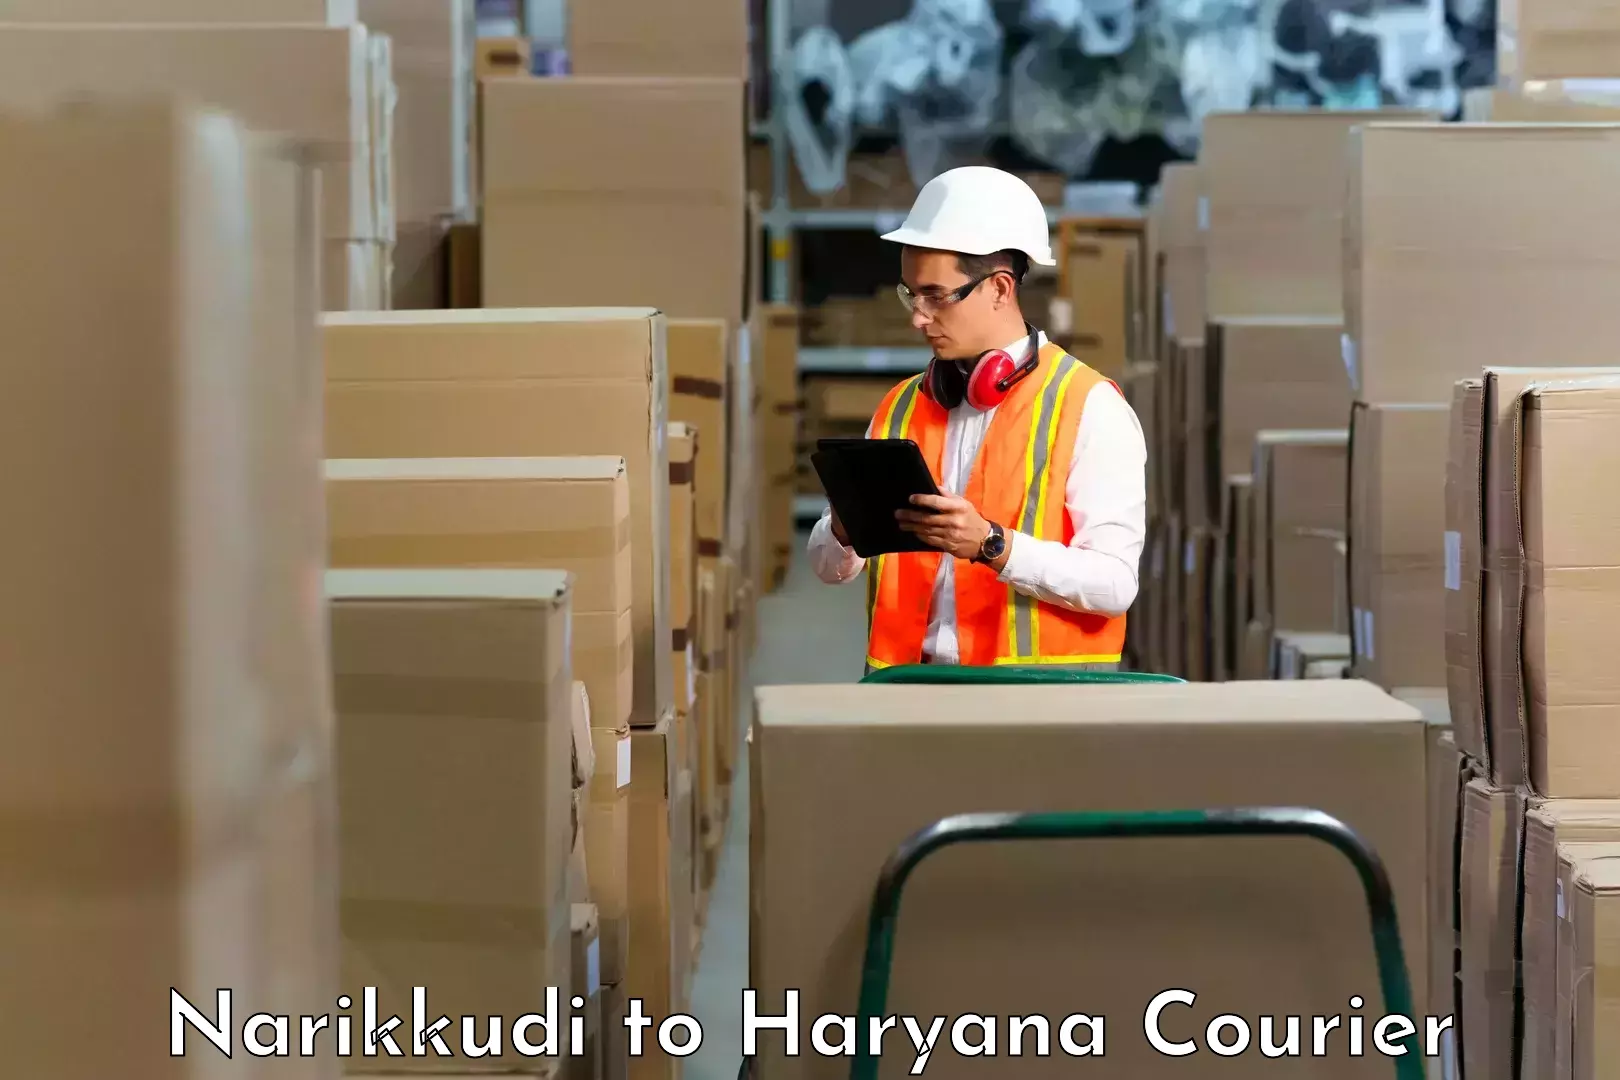 Professional courier handling Narikkudi to Assandh